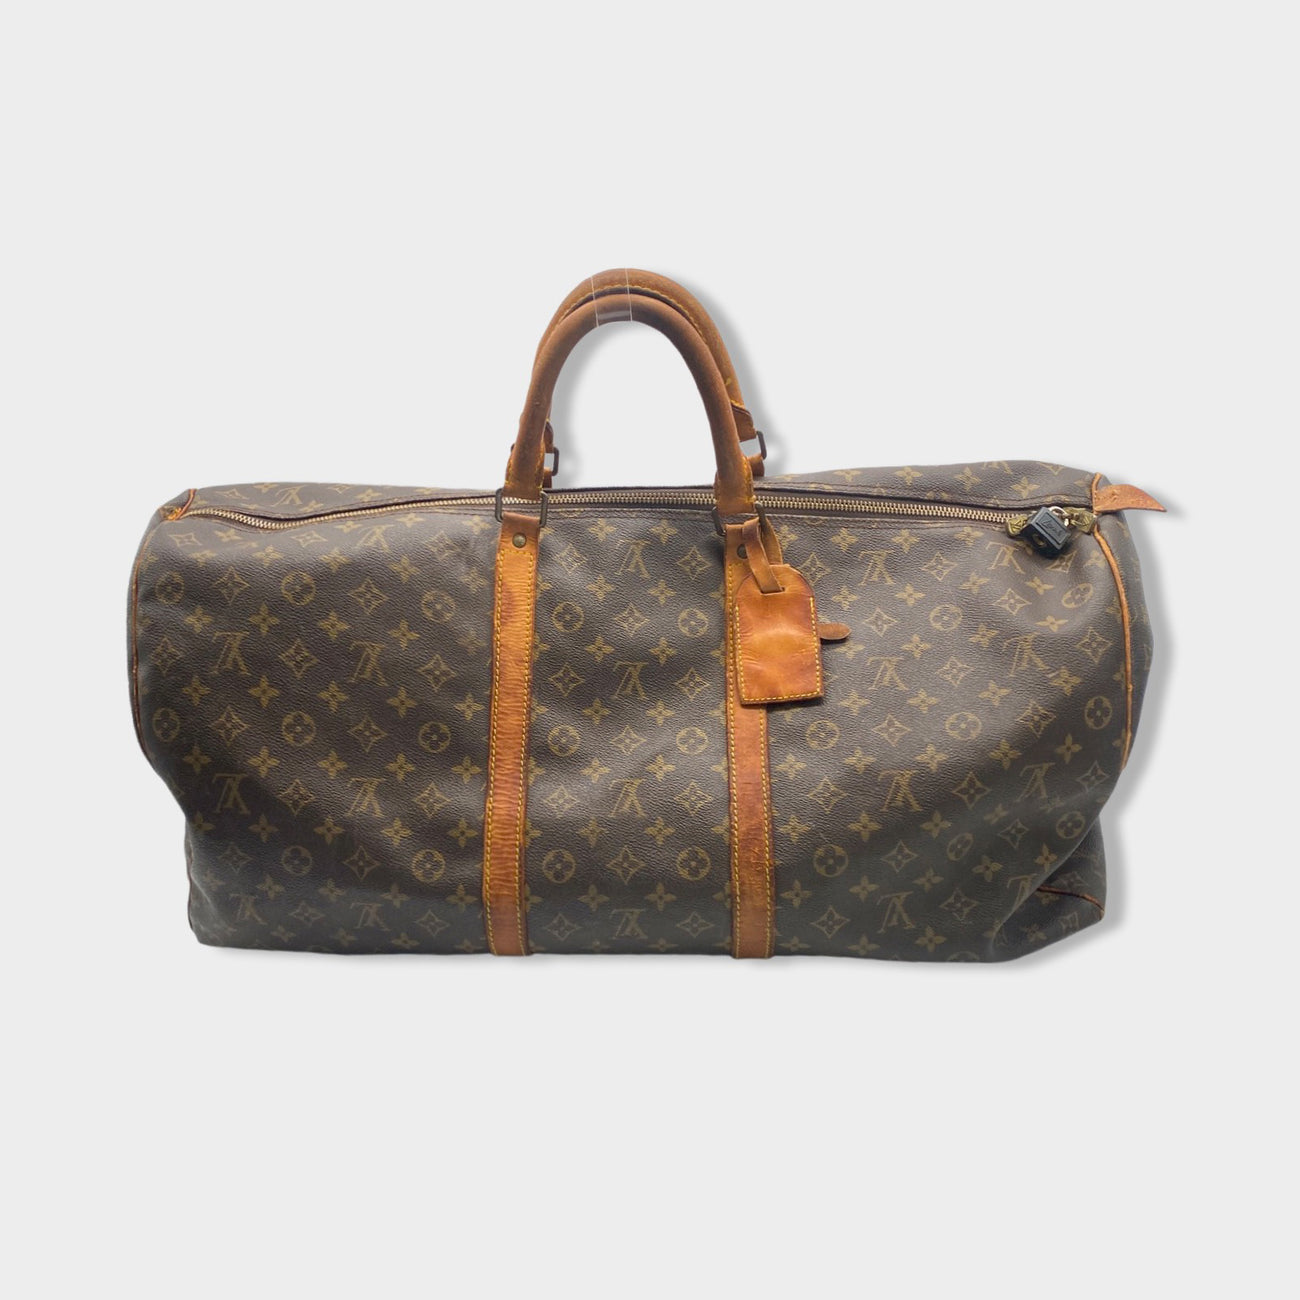 Sold at Auction: Vintage Louis Vuitton Duffel Bag